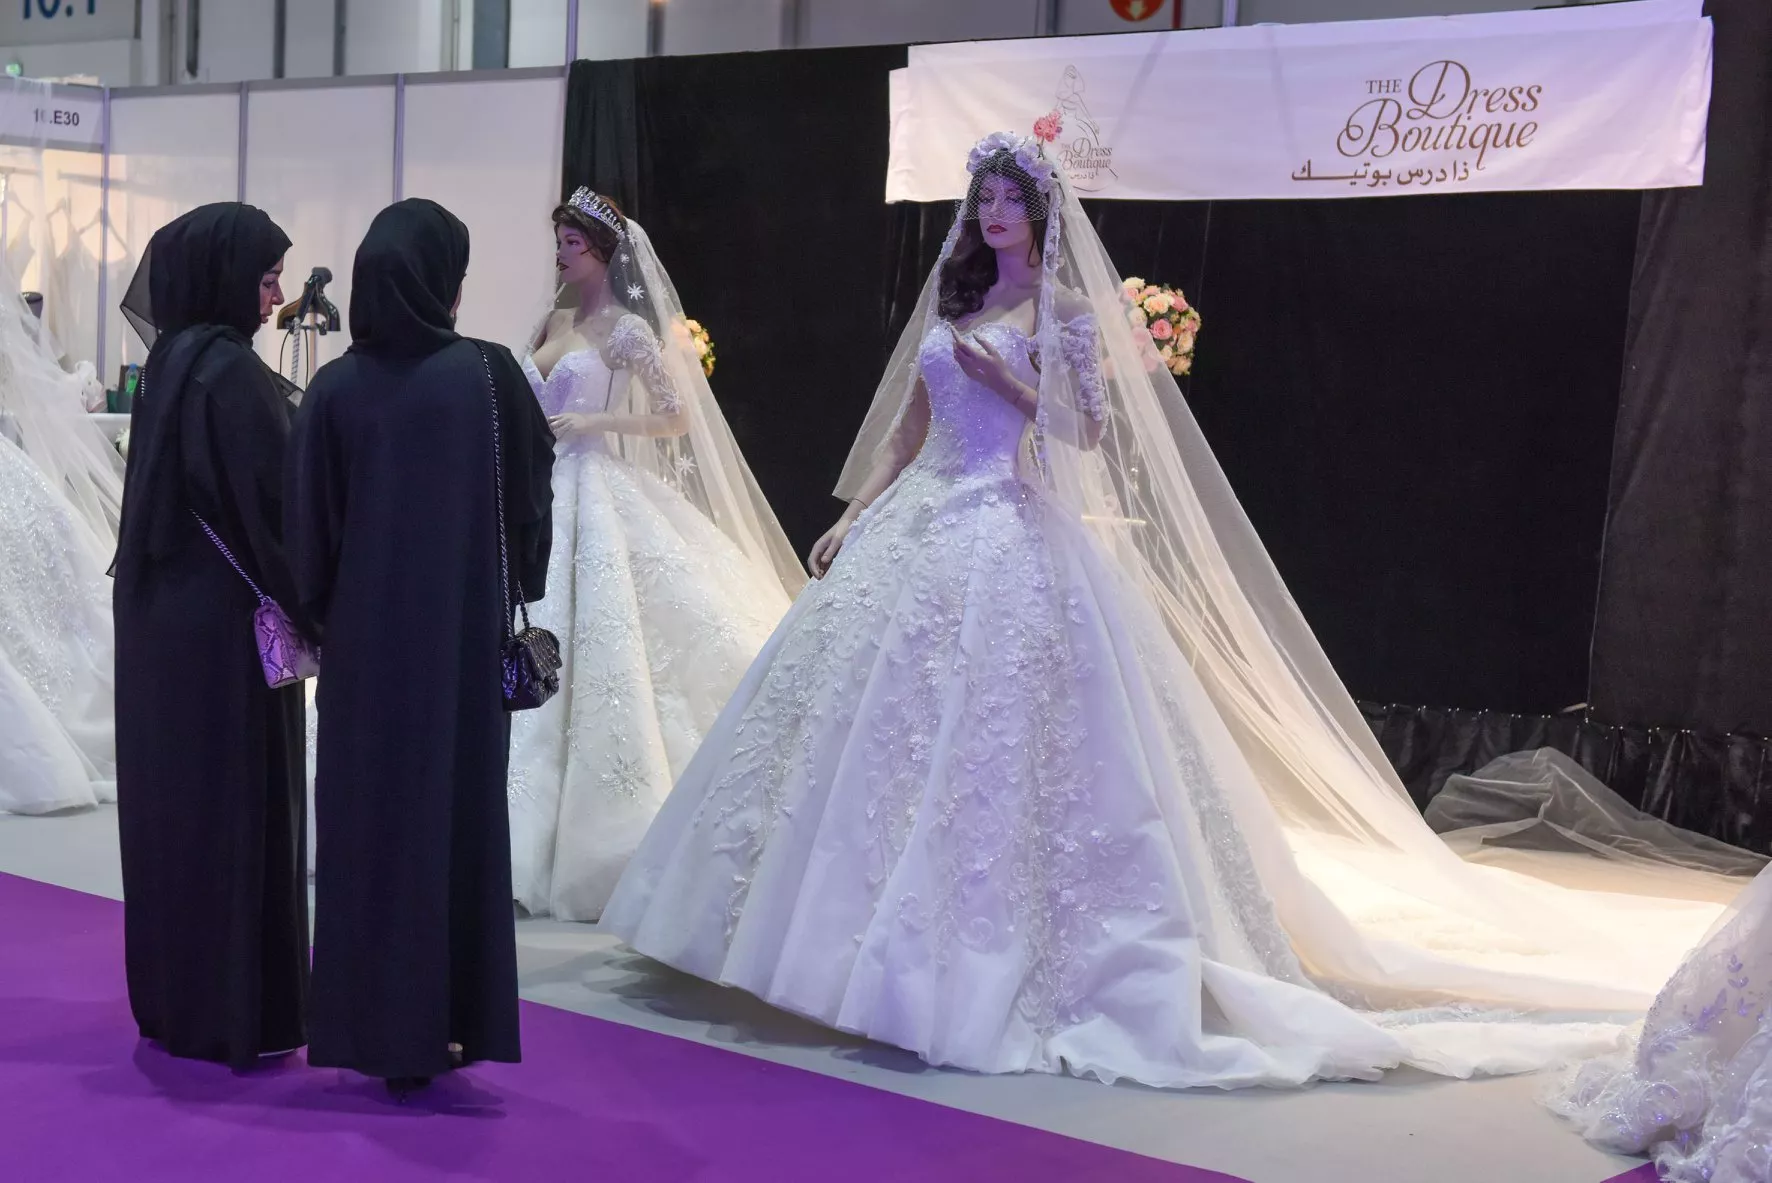 معرض العروس أبو ظبي 2018 يجمع العرائس المستقبليات بأهمّ خبراء الجمال والمصمّمين